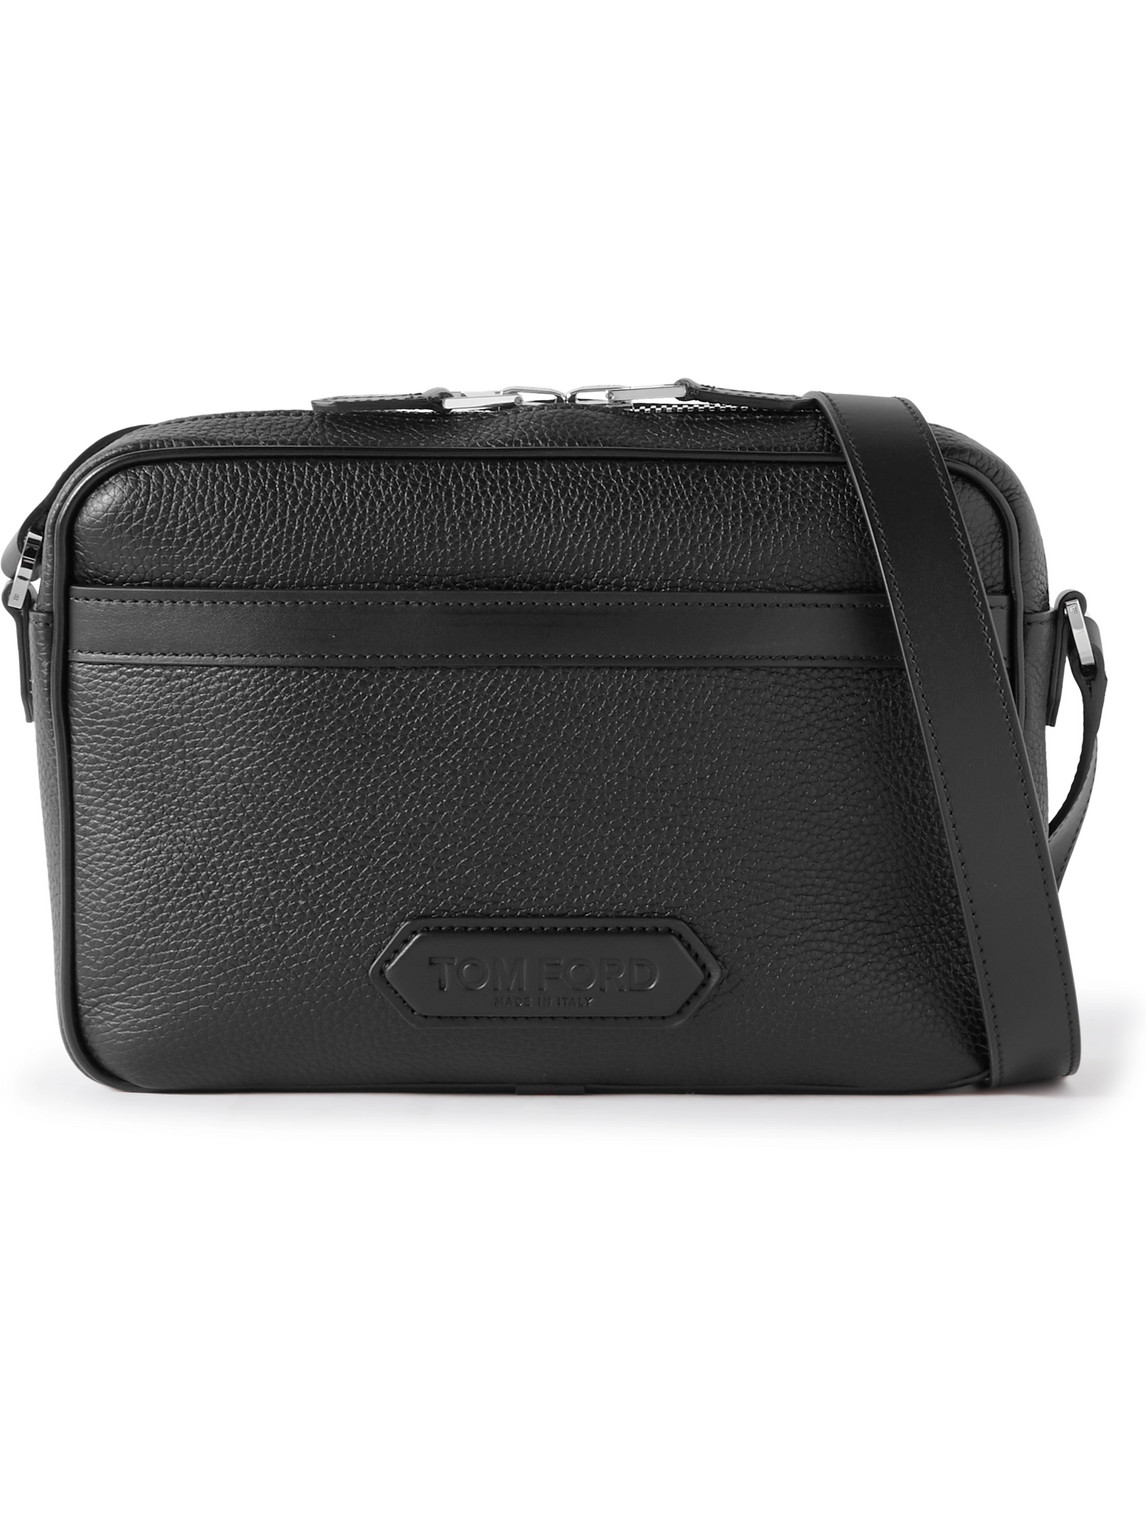 Tom Ford Full-grain Leather Messenger Bag In Black | ModeSens